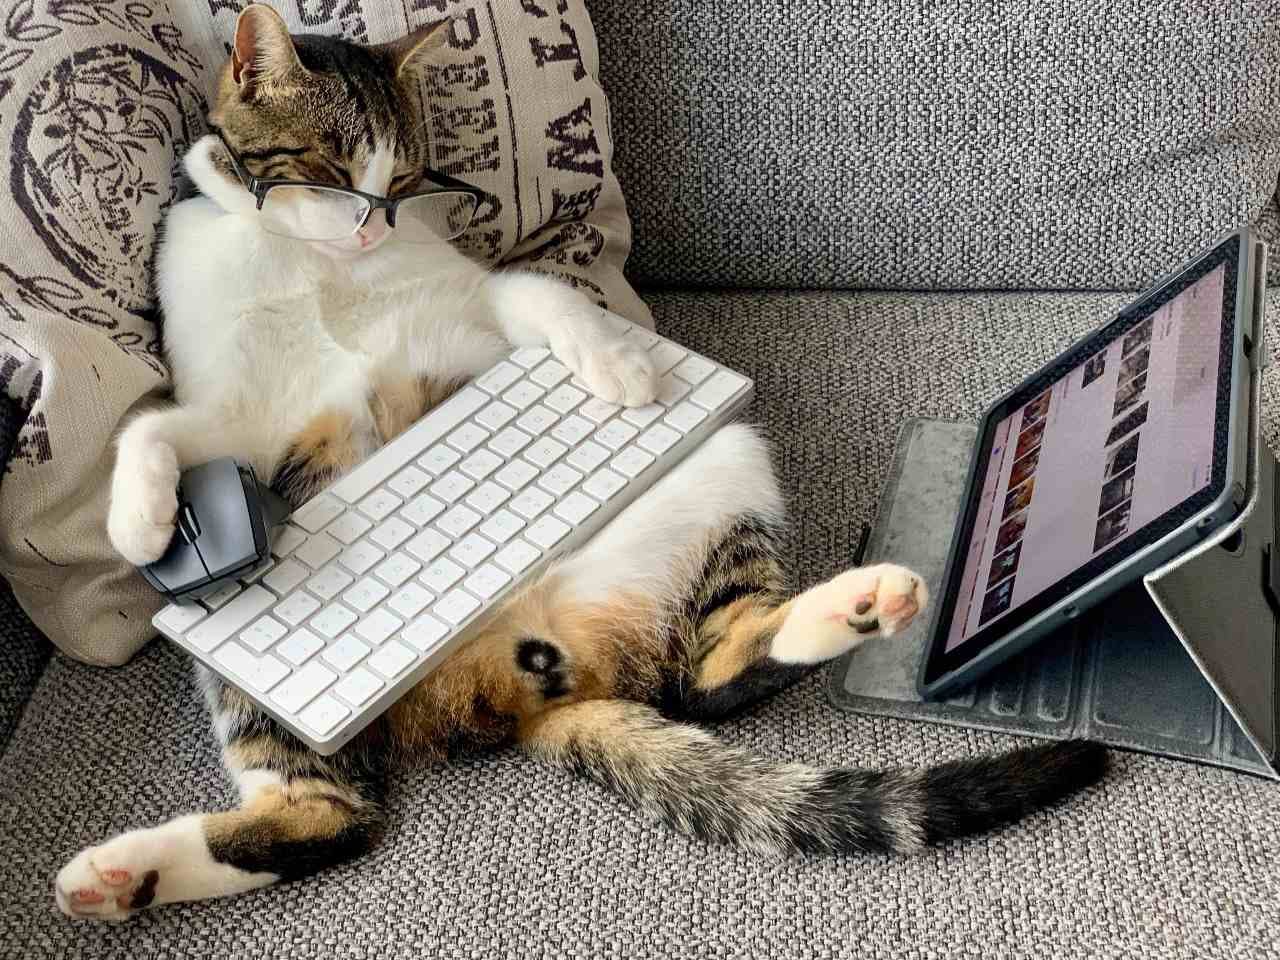 Katt sitter foran skjerm - ser katter TV eller bare later de som? 